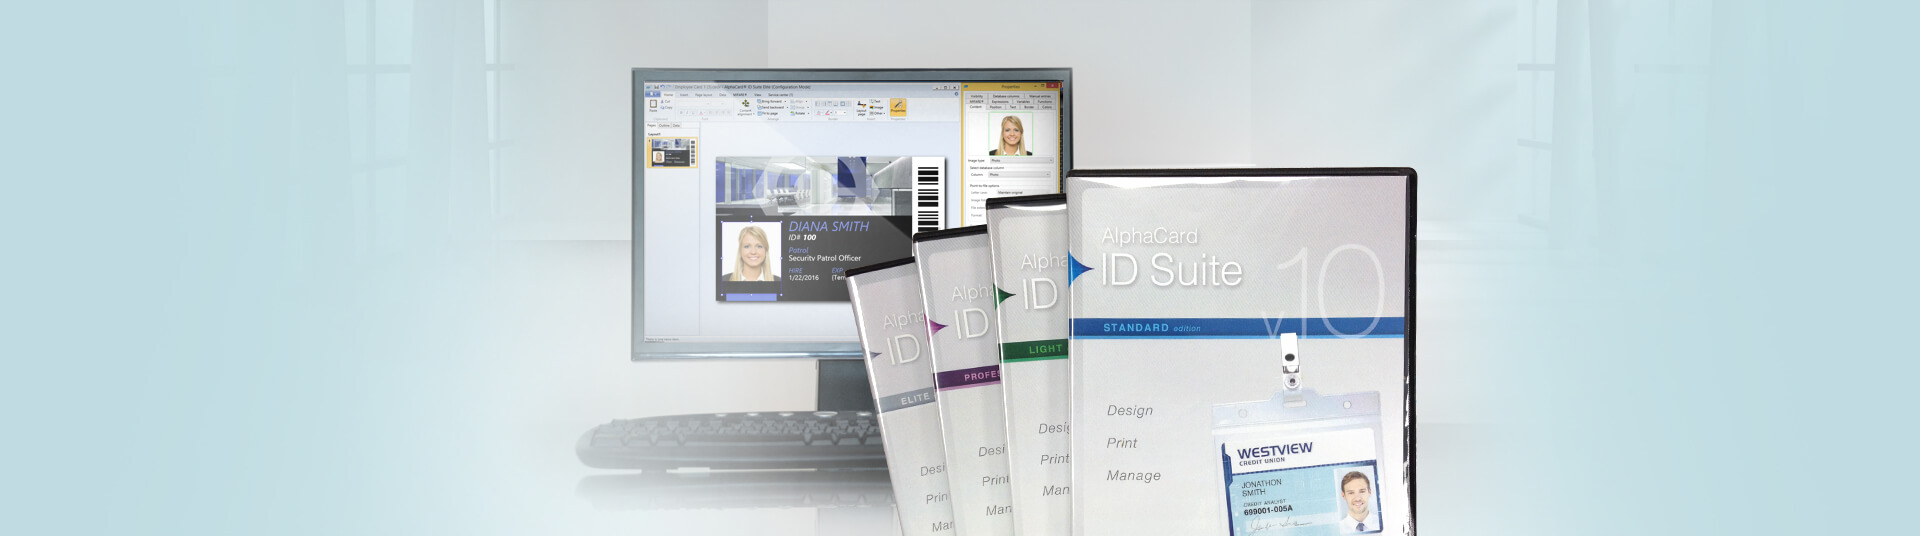 ID Software Basics